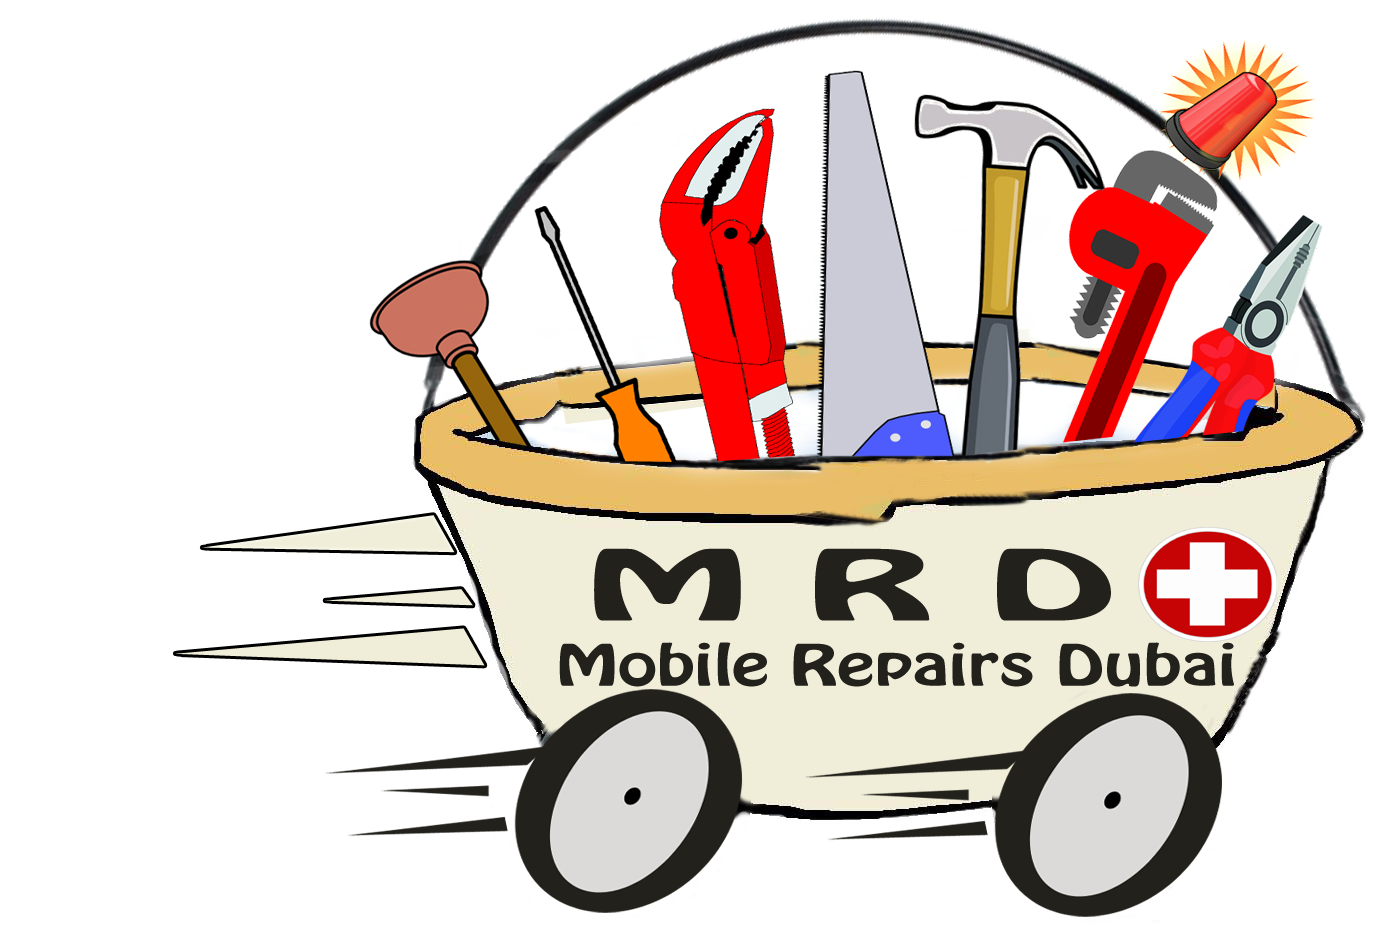 Mobile Repairs Dubai - 058-1873003